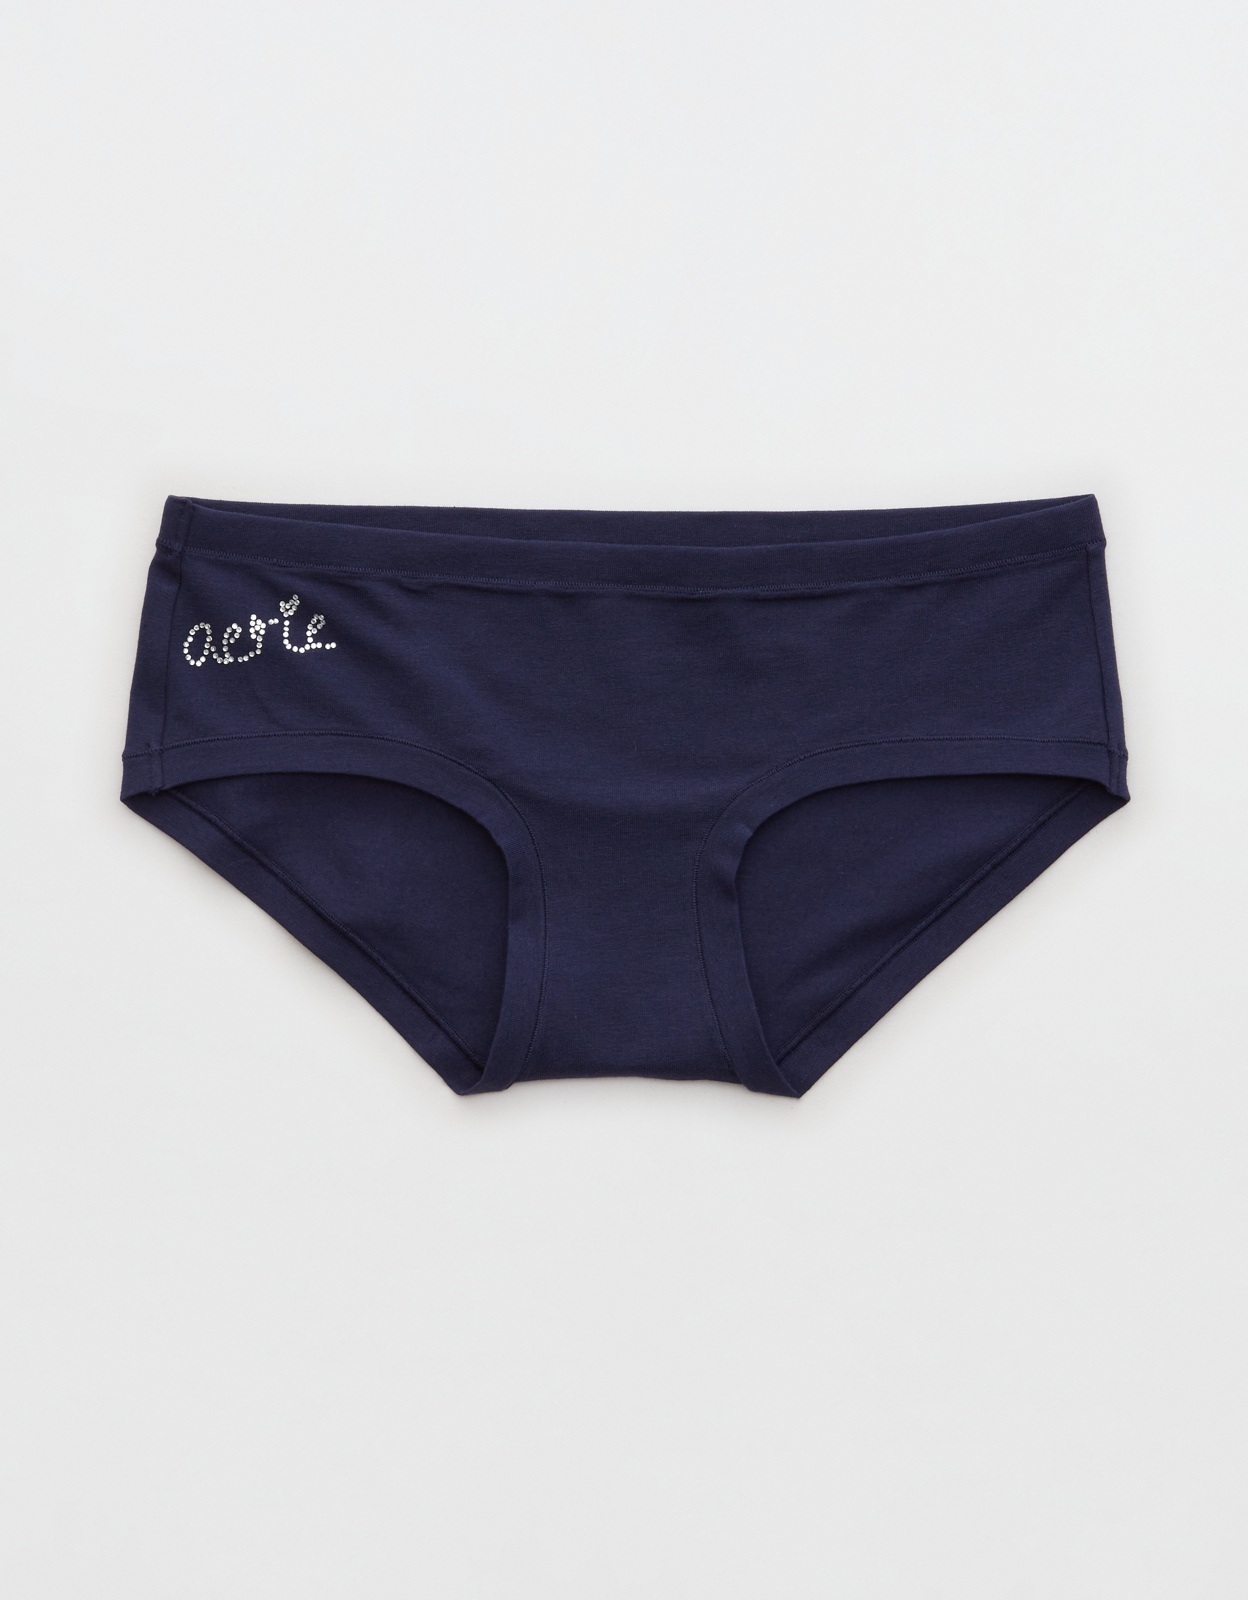 Shop Aerie Cotton Boybrief Underwear online